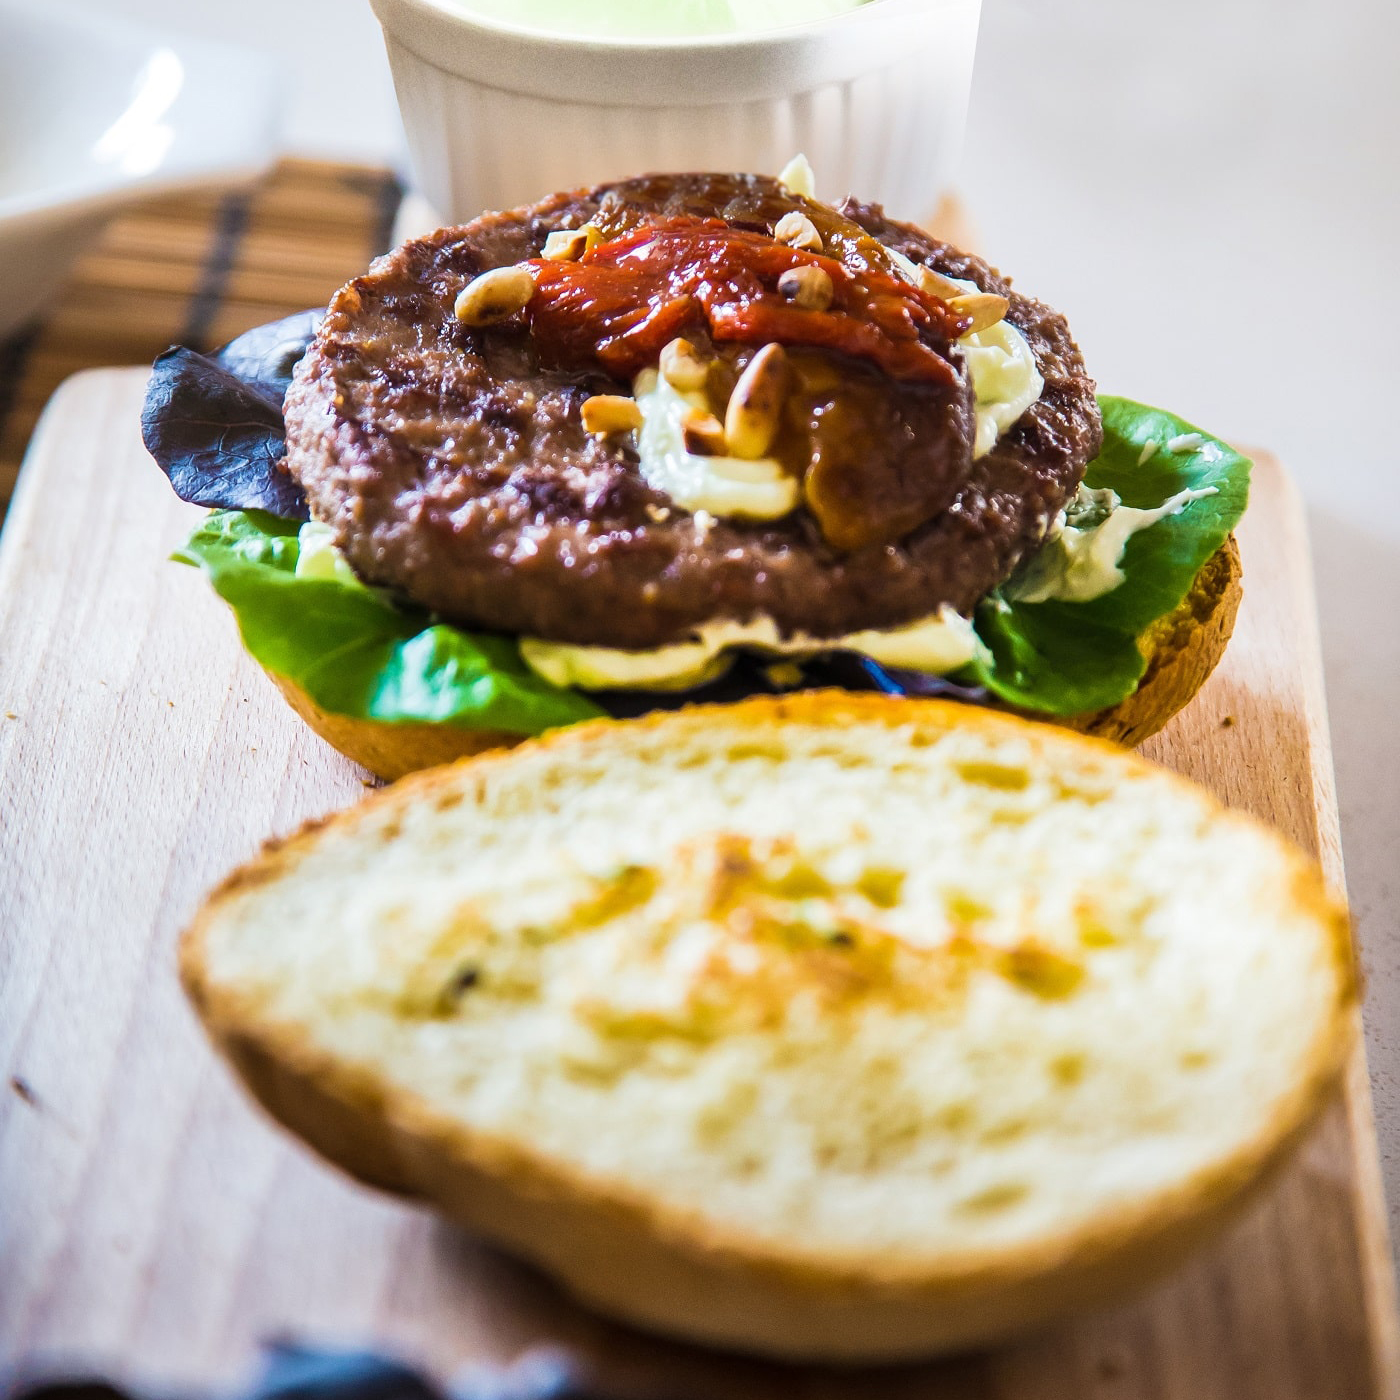 Immagine: Hamburger Montana al Bacon con peperoni alla piemontese e formaggio al wasabi